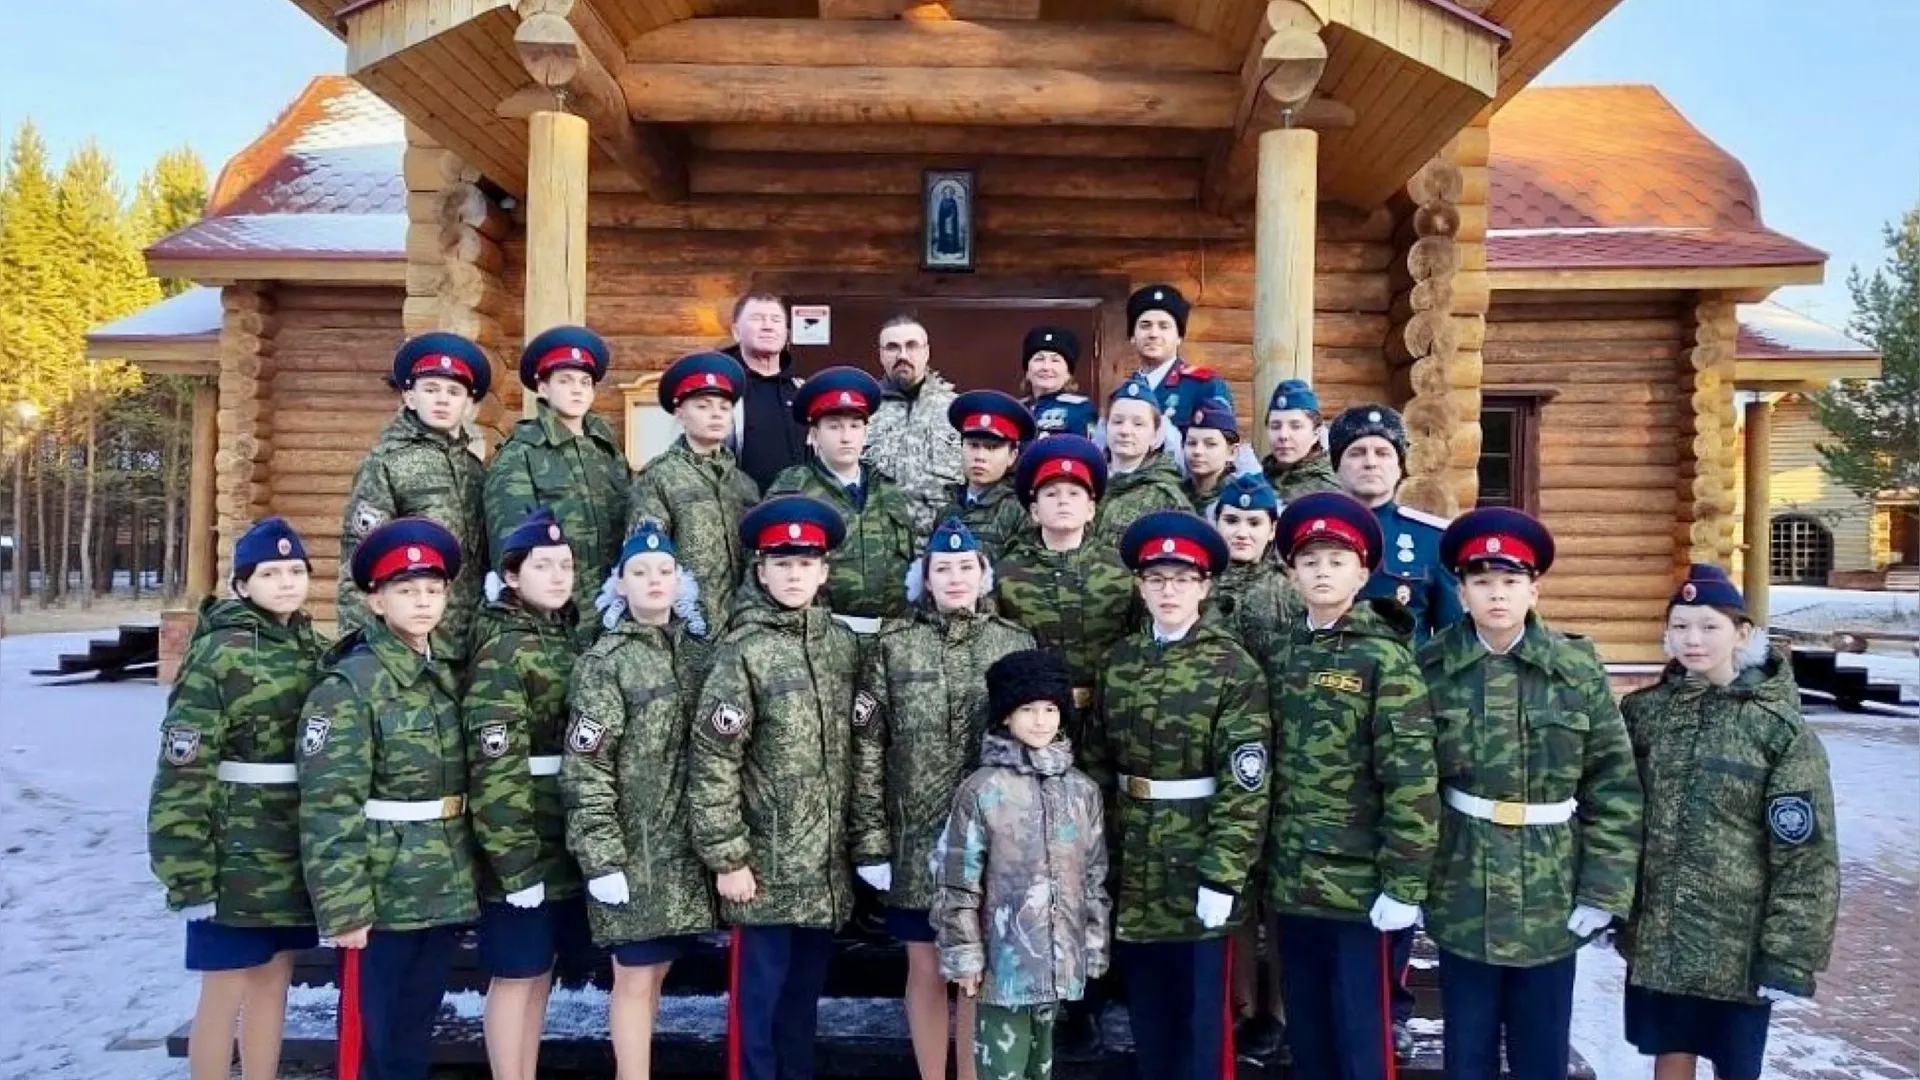 Пуровские школьники  успешно выступили на окружных кадетско-казачьих сборах. Фото: t.me/puradm